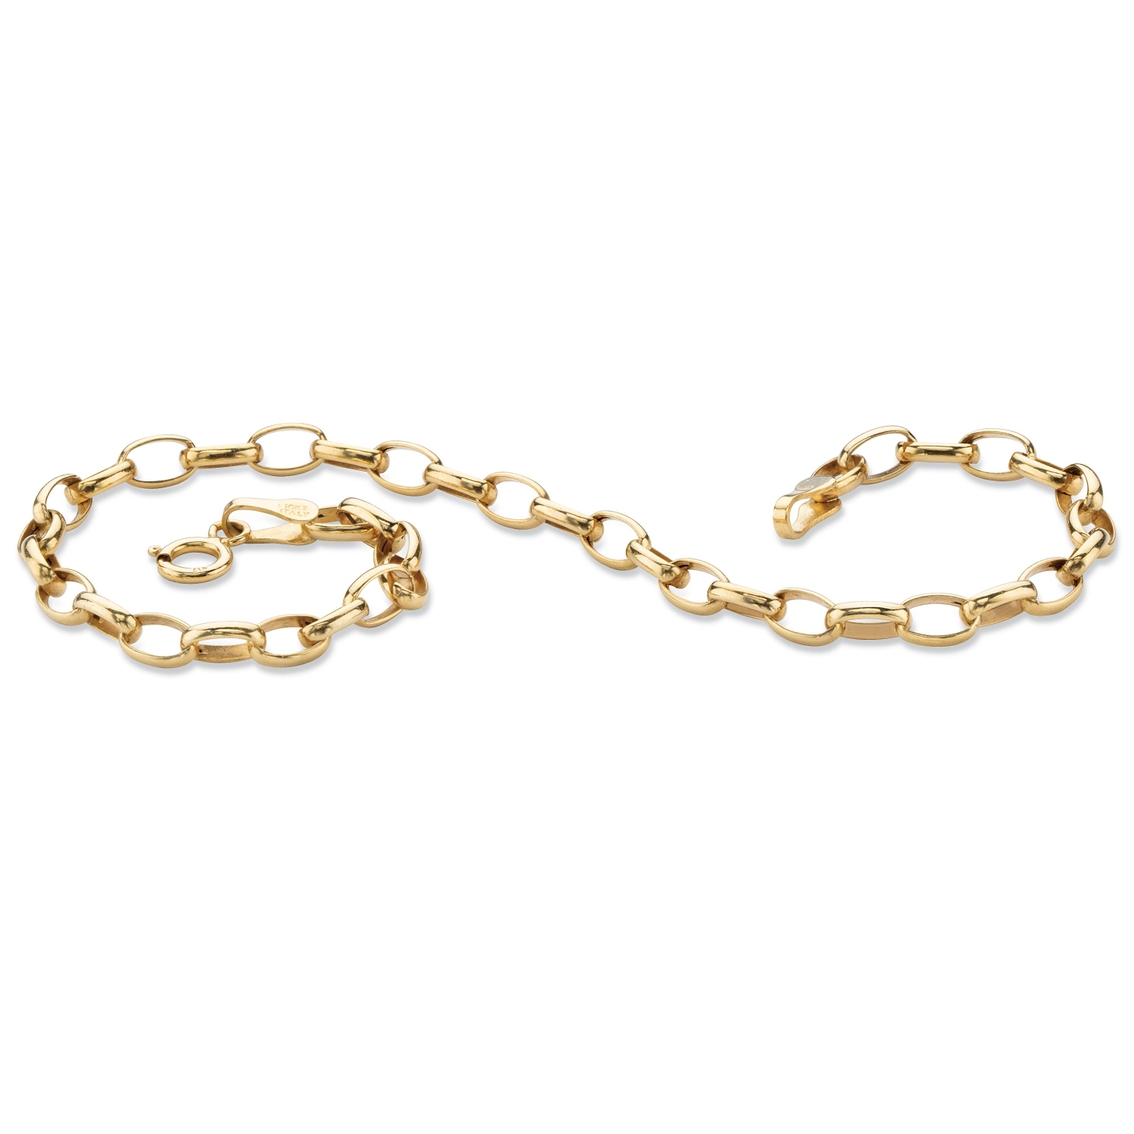 Rolo-Link Bracelet in Solid 10k Gold - Image 1 of 5